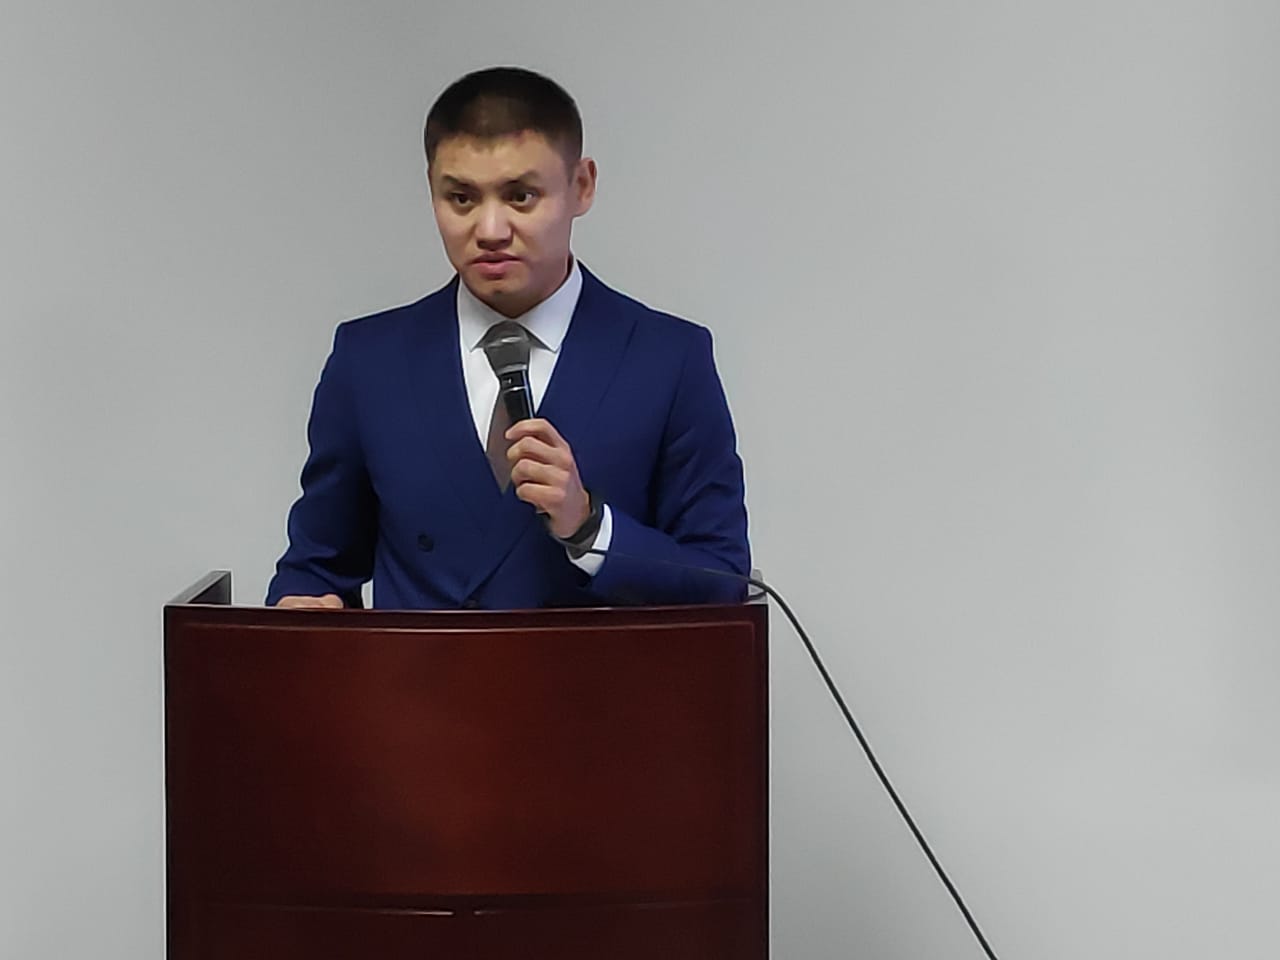 Айтуар Кошмамбетов: международное молодежное сотрудничество должно быть приоритетом госорганов и гражданских институтов